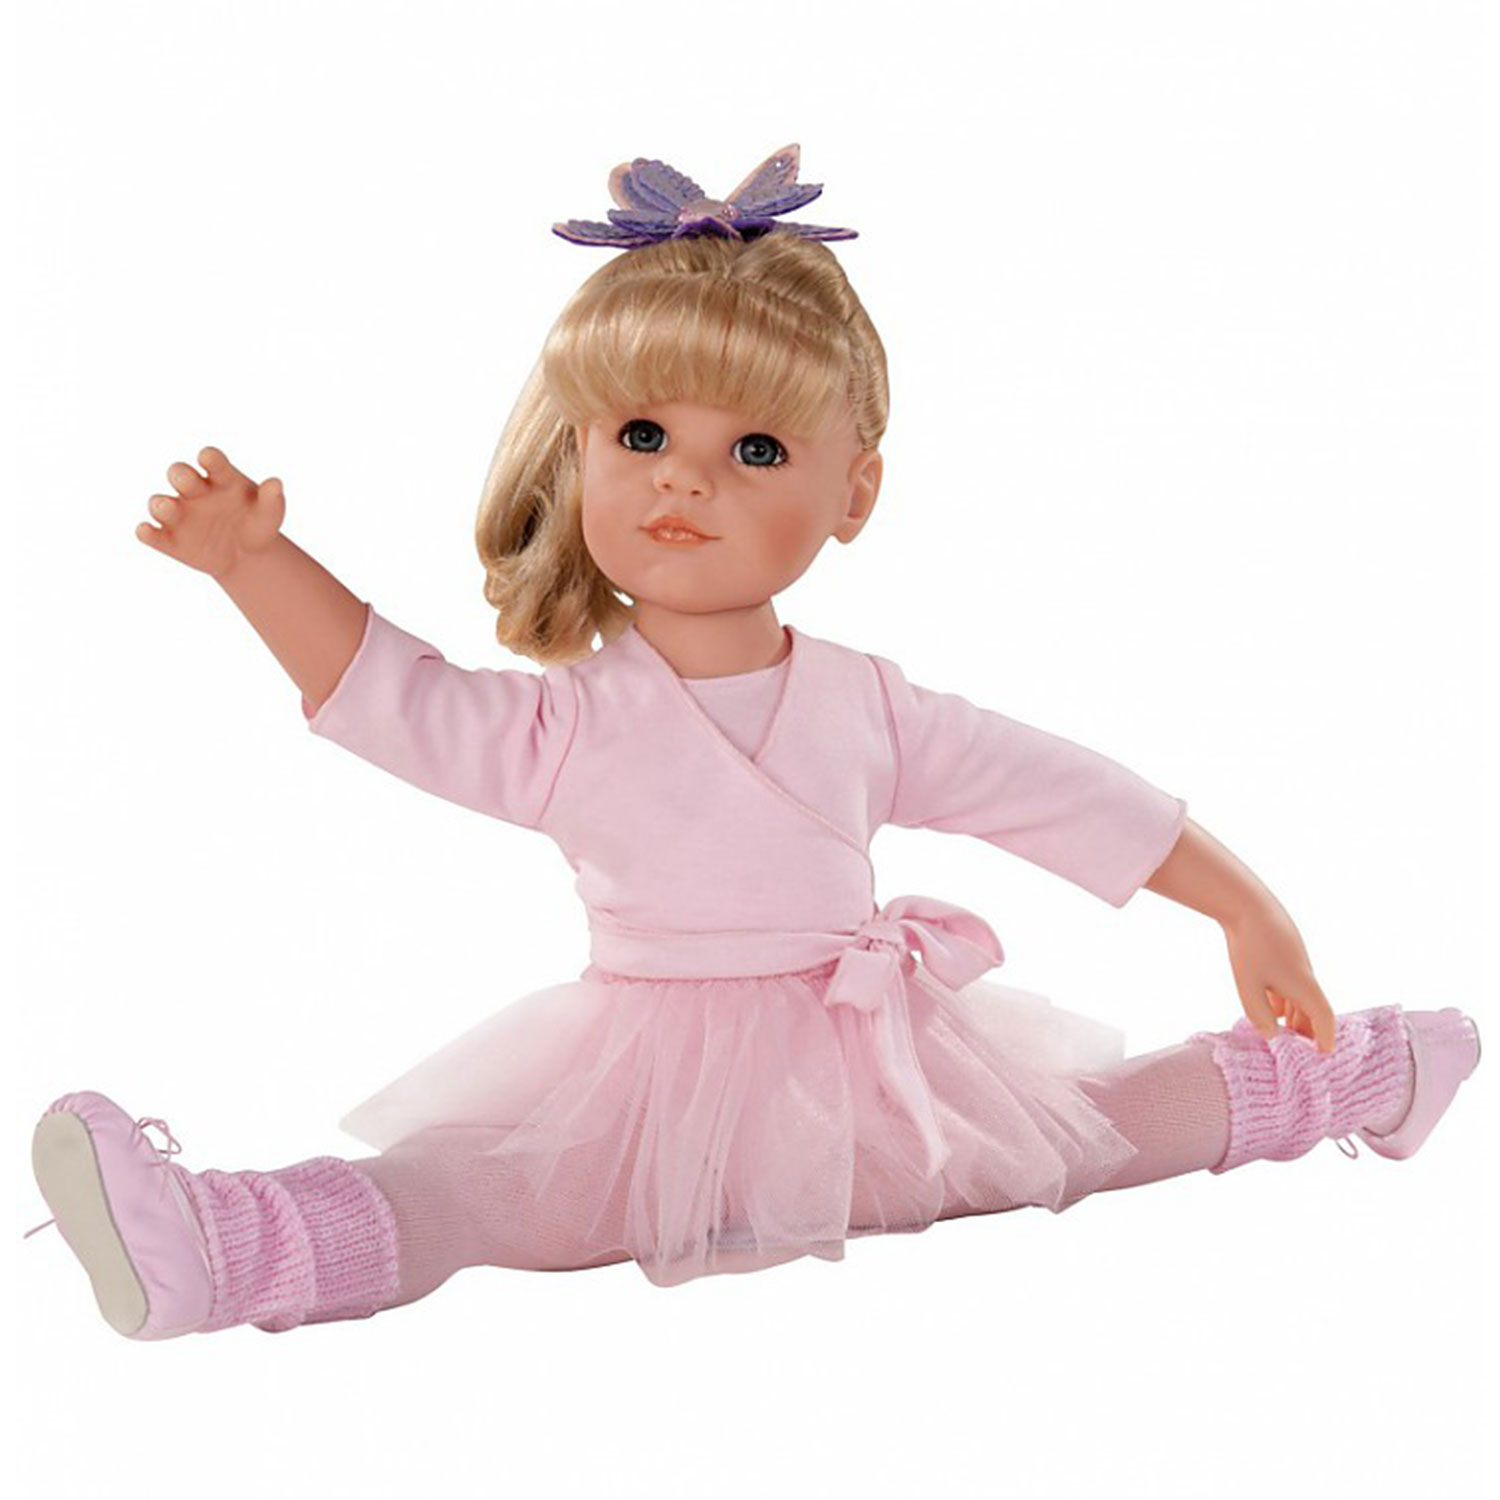 Купить хорошую куклу. Кукла Gotz Ханна балерина, 50 см. Кукла Готц Ханна. Кукла Готц Ханна балерина. Куклы Gotz балерины.